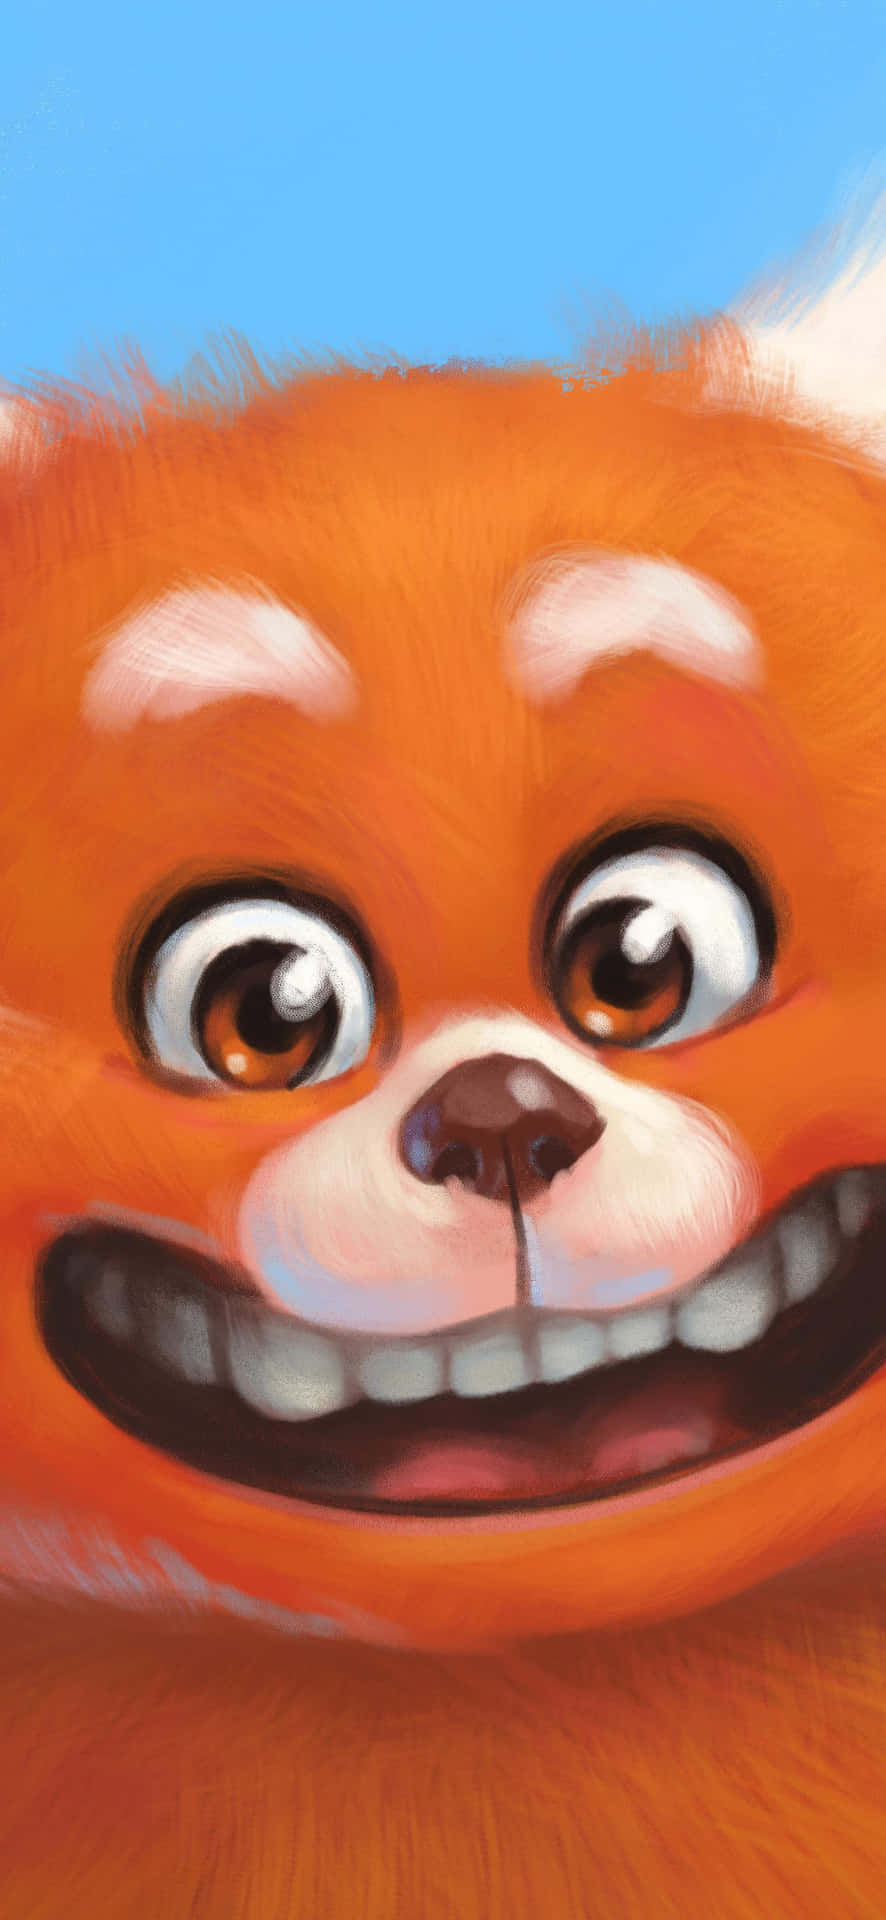 Smiling Orange Creature Illustration Wallpaper